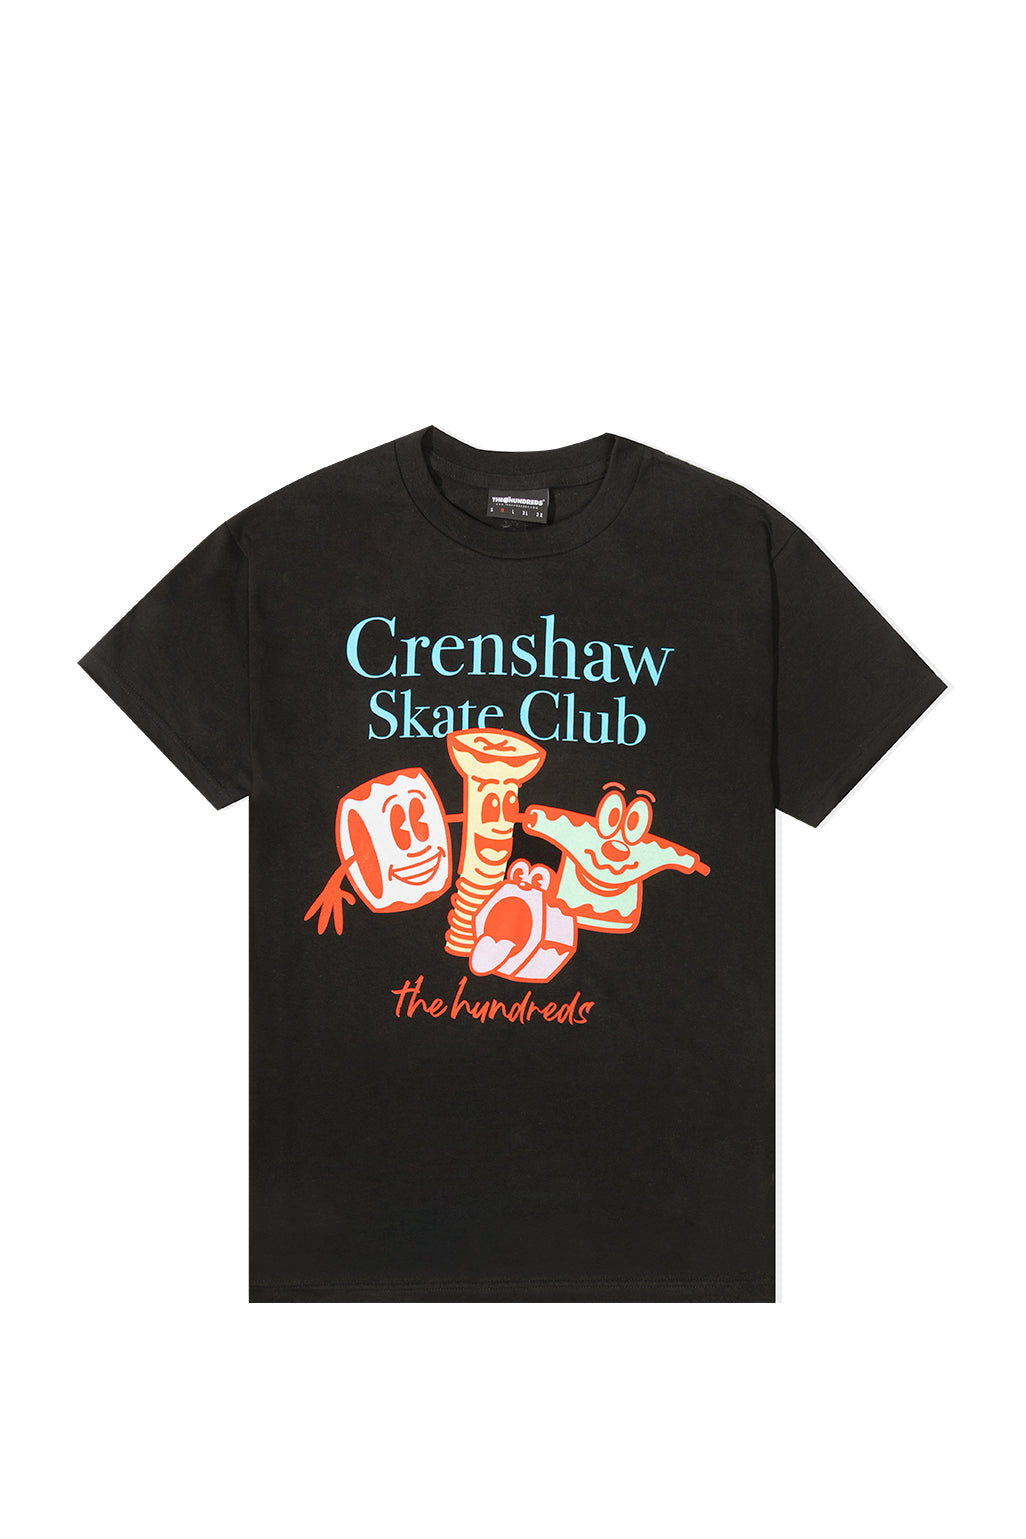 The Hundreds X Crenshaw Skate Club